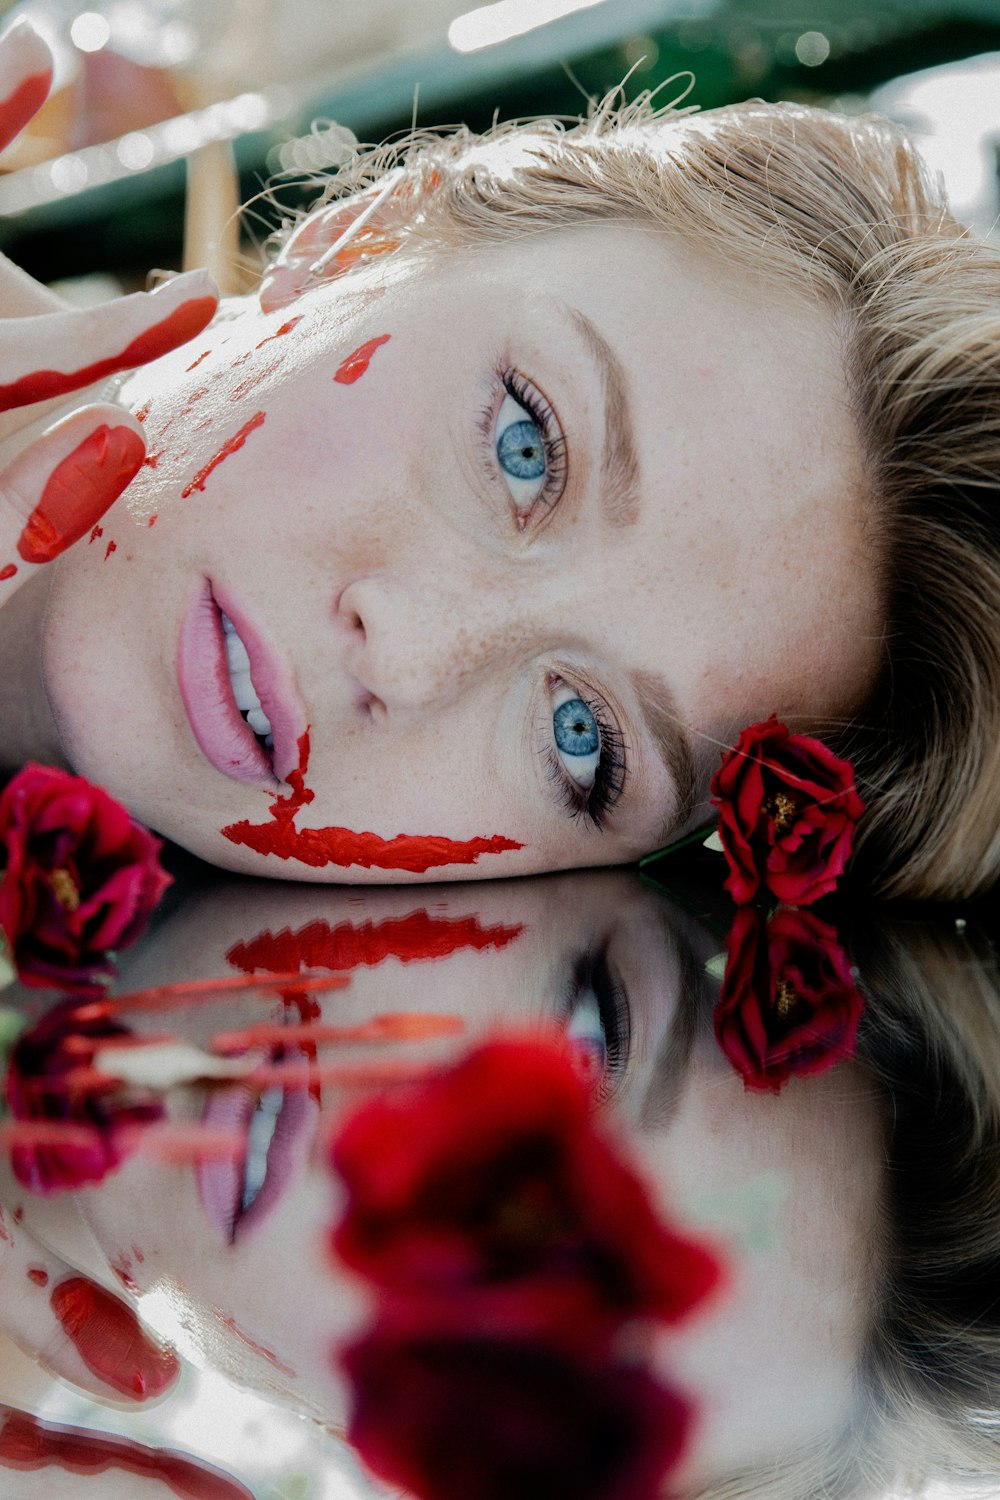 mulher com pétalas de flores vermelhas e brancas em seu rosto